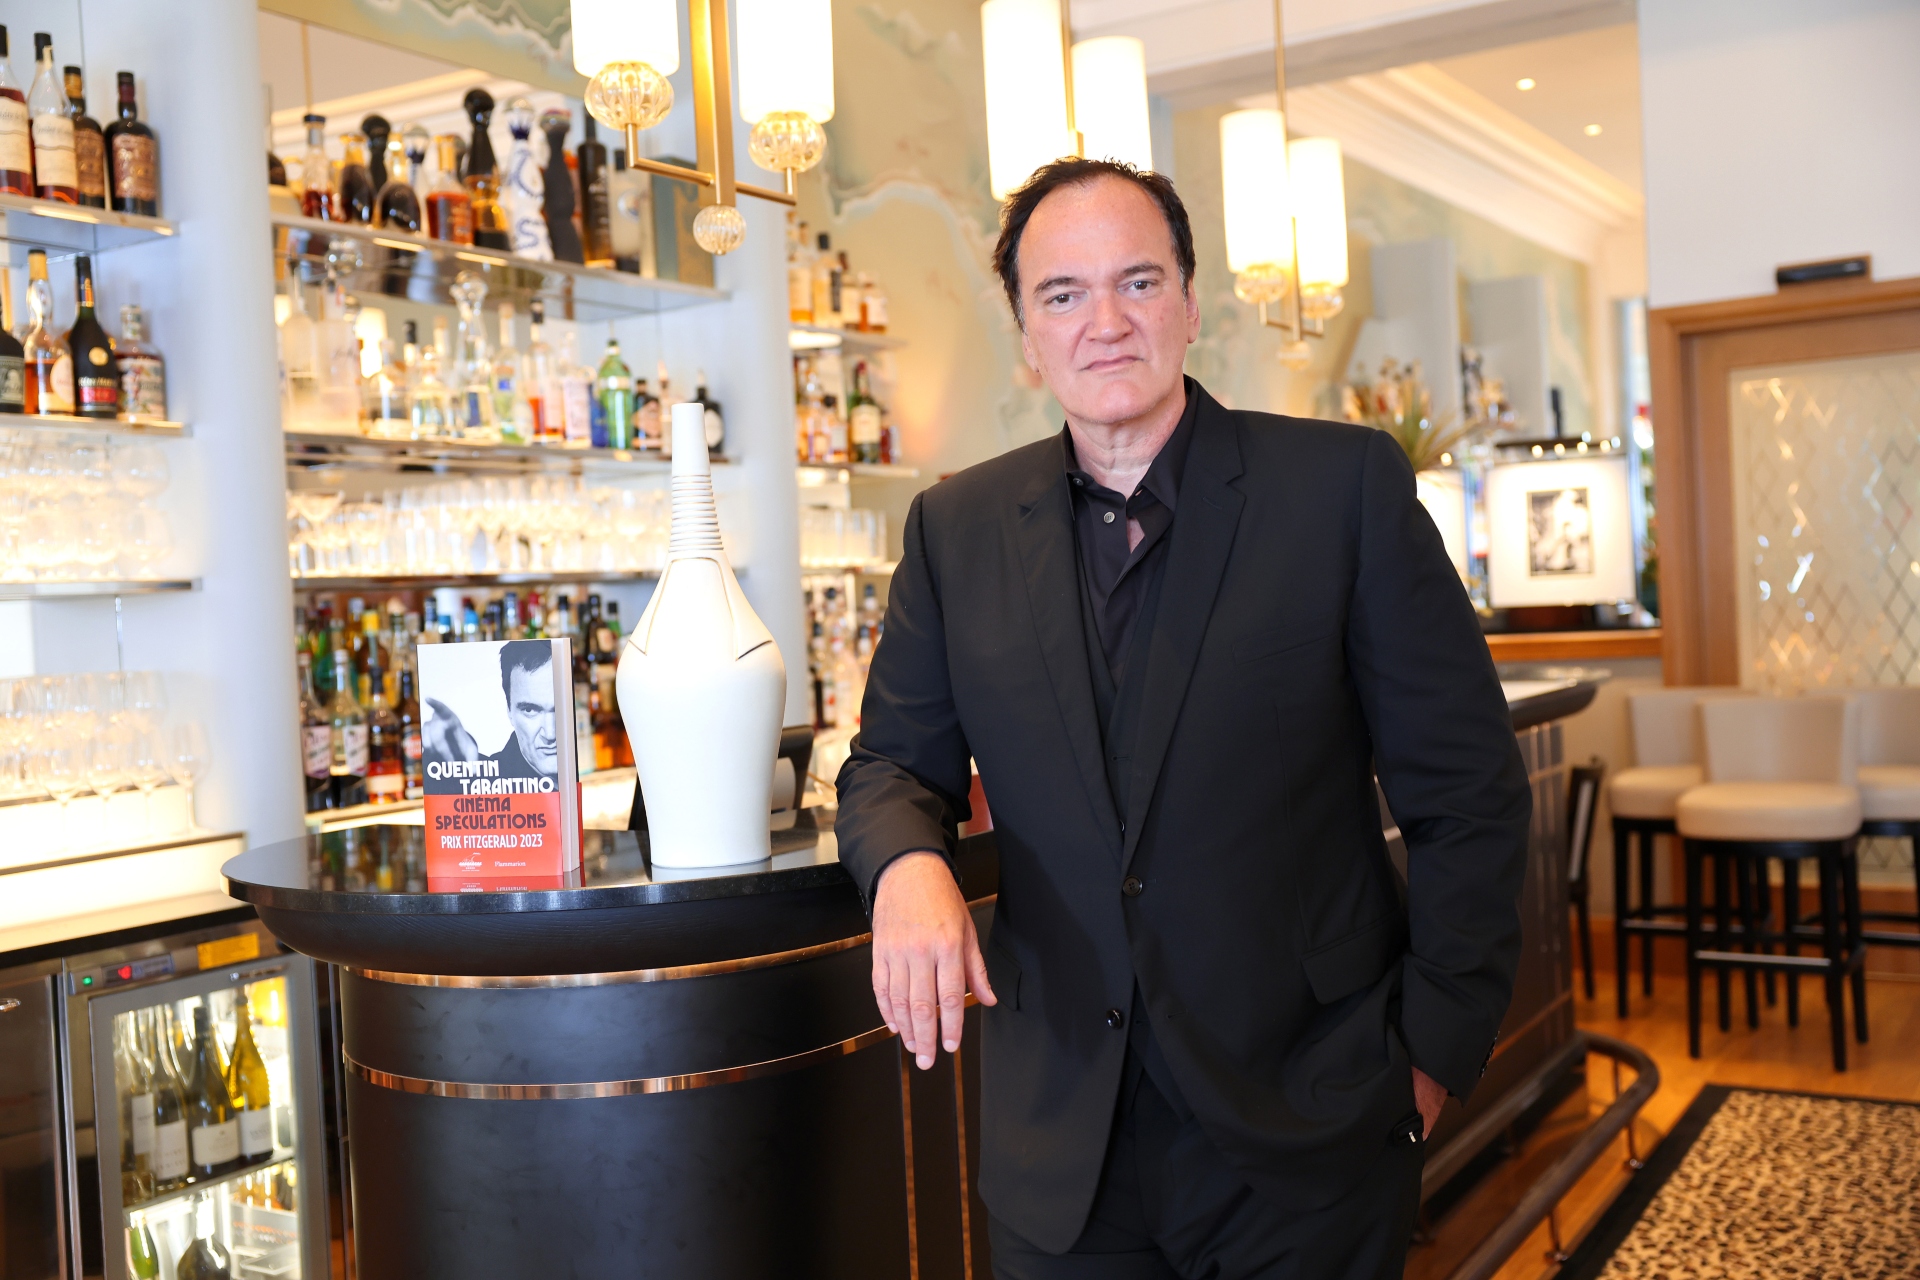 Quentin Tarantino è noto per aver rilanciato le carriere di alcuni